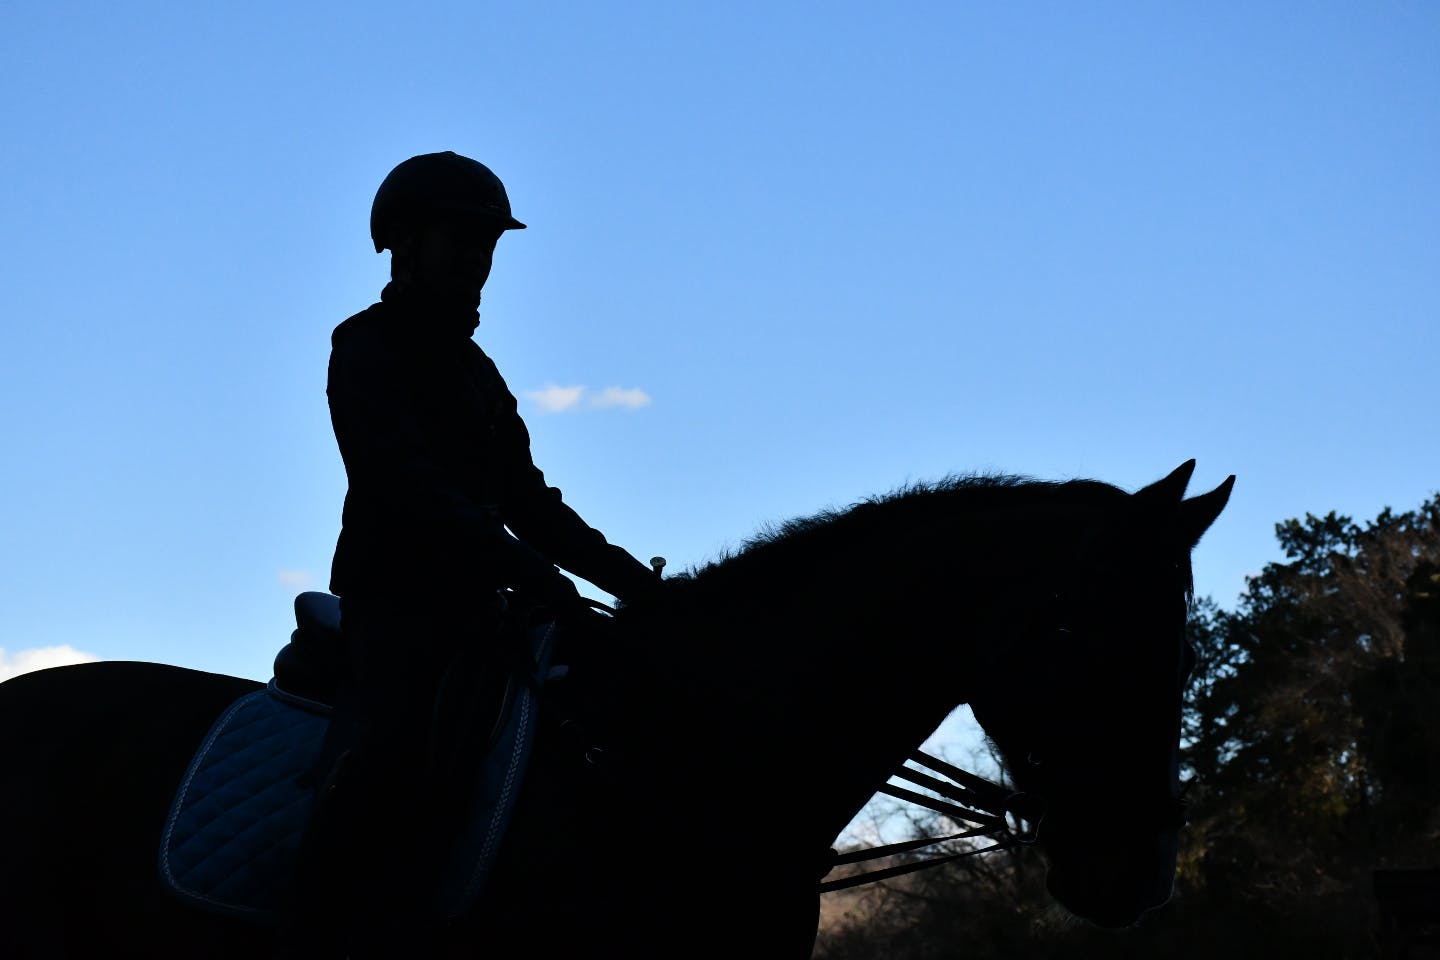 【神奈川・大磯・乗馬体験】豊かな自然に囲まれて過ごす特別な時間。大磯乗馬体験